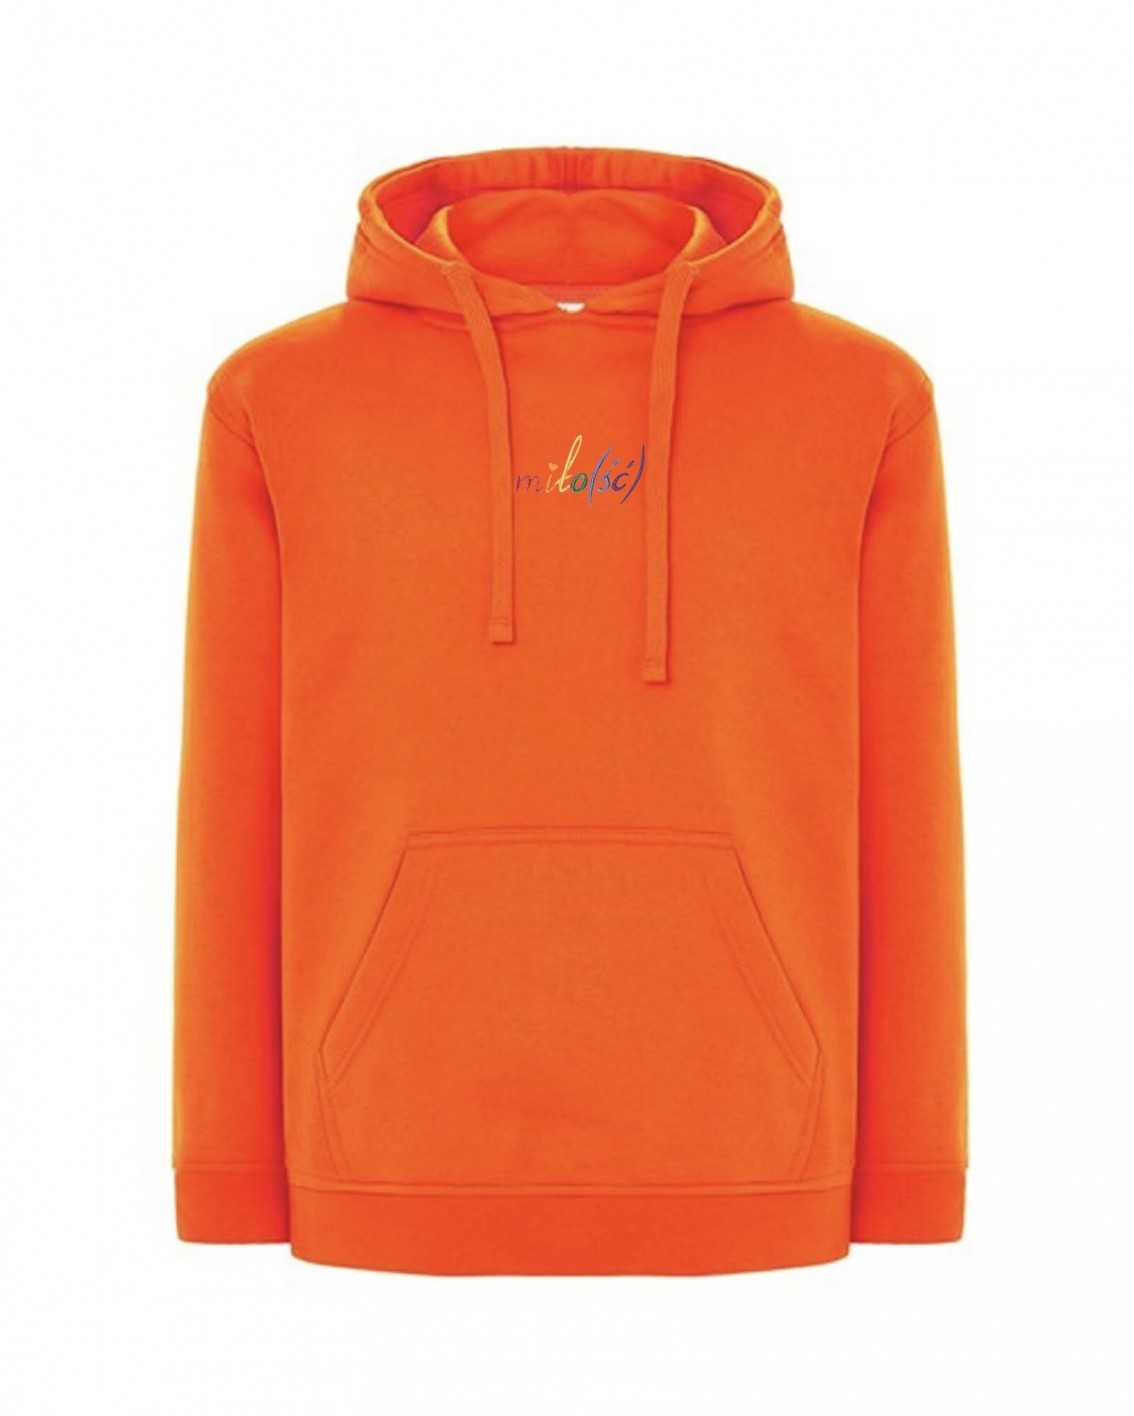 NOWOŚĆ! Original hoodie pomarańczowa z tęczowym haftem Miło(ść)